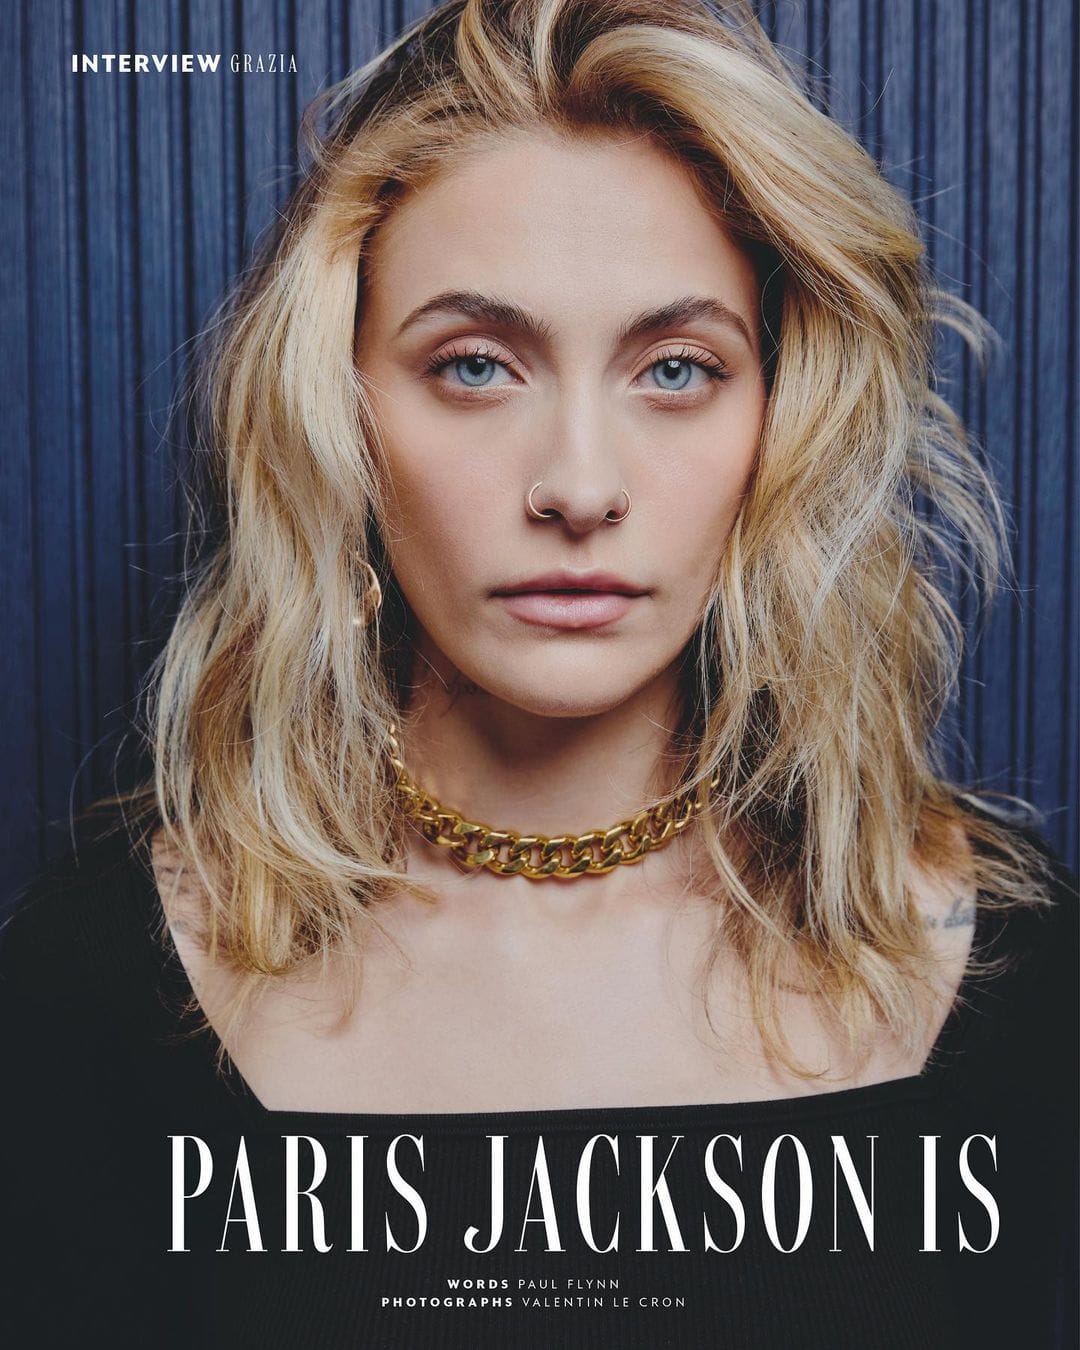 Ist möglicherweise ein Bild von 1 Person, blondes Haar, Makeup, Zeitschriften, Plakat und Text „INTERVIEW GRAZIA PARIS JACKSON IS WORDS AUL LYNN H PHOTOGRAPHS“